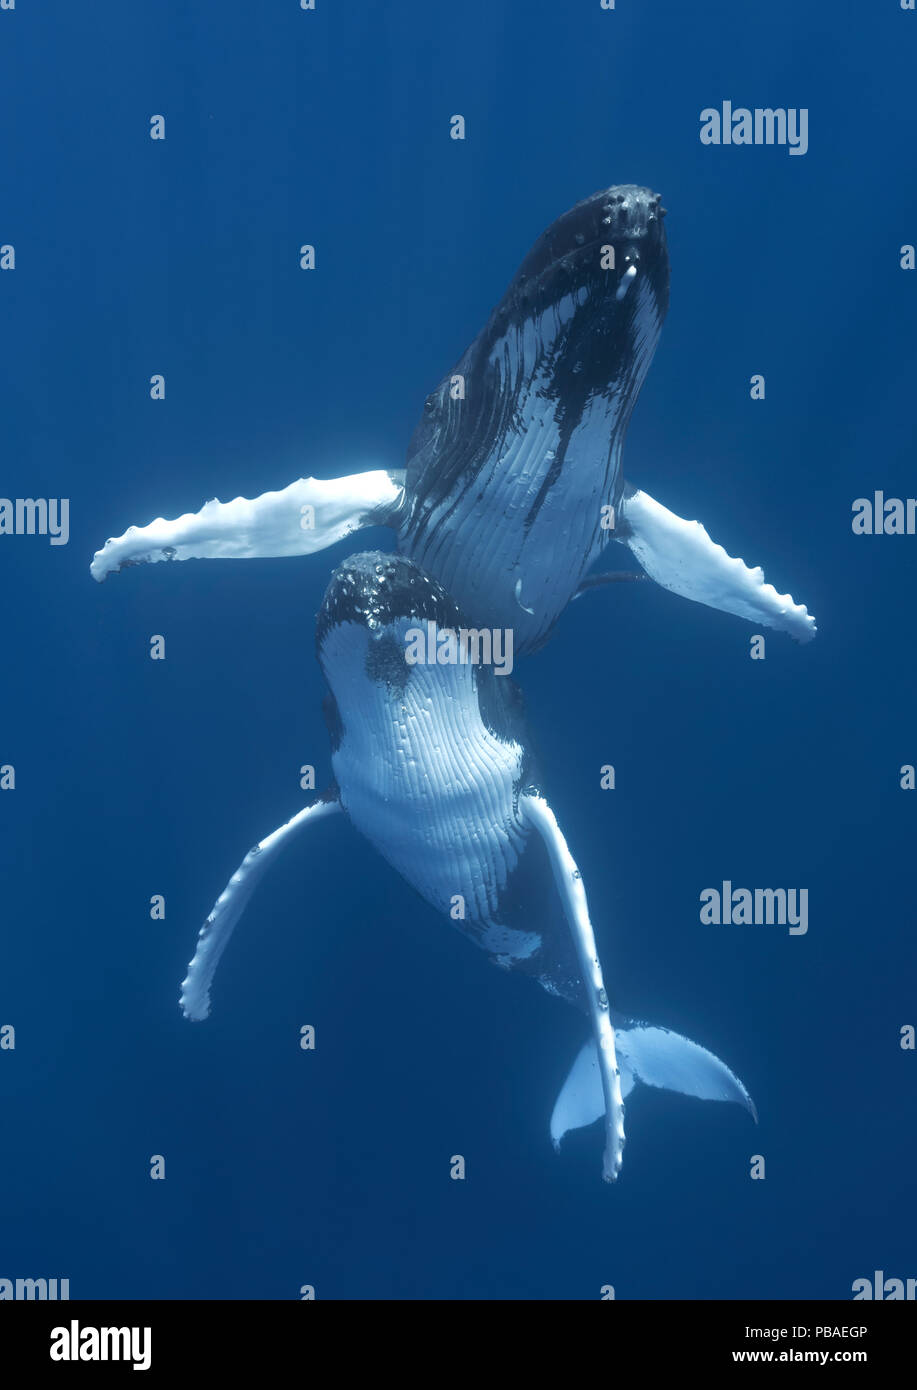 Les baleines à bosse (Megaptera novaeangliae) engagés dans la cour, avec l'homme planant au-dessus de la femelle. Vava'u, Tonga, l'océan Pacifique. Banque D'Images